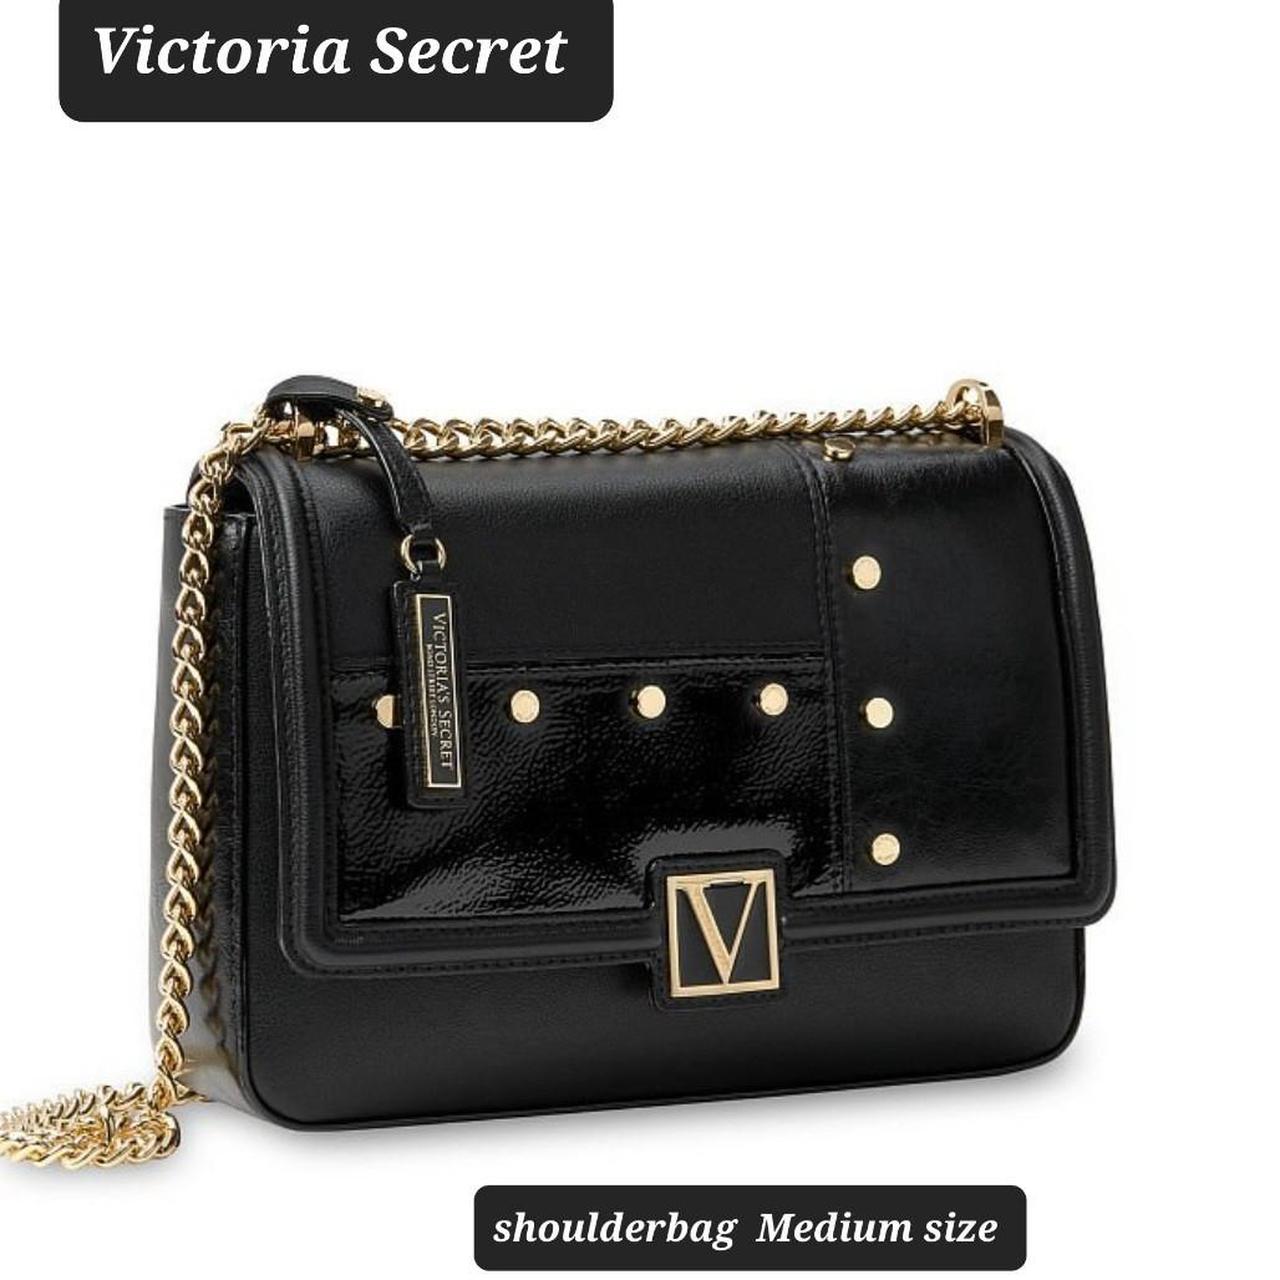 The Victoria Medium Shoulder Bag